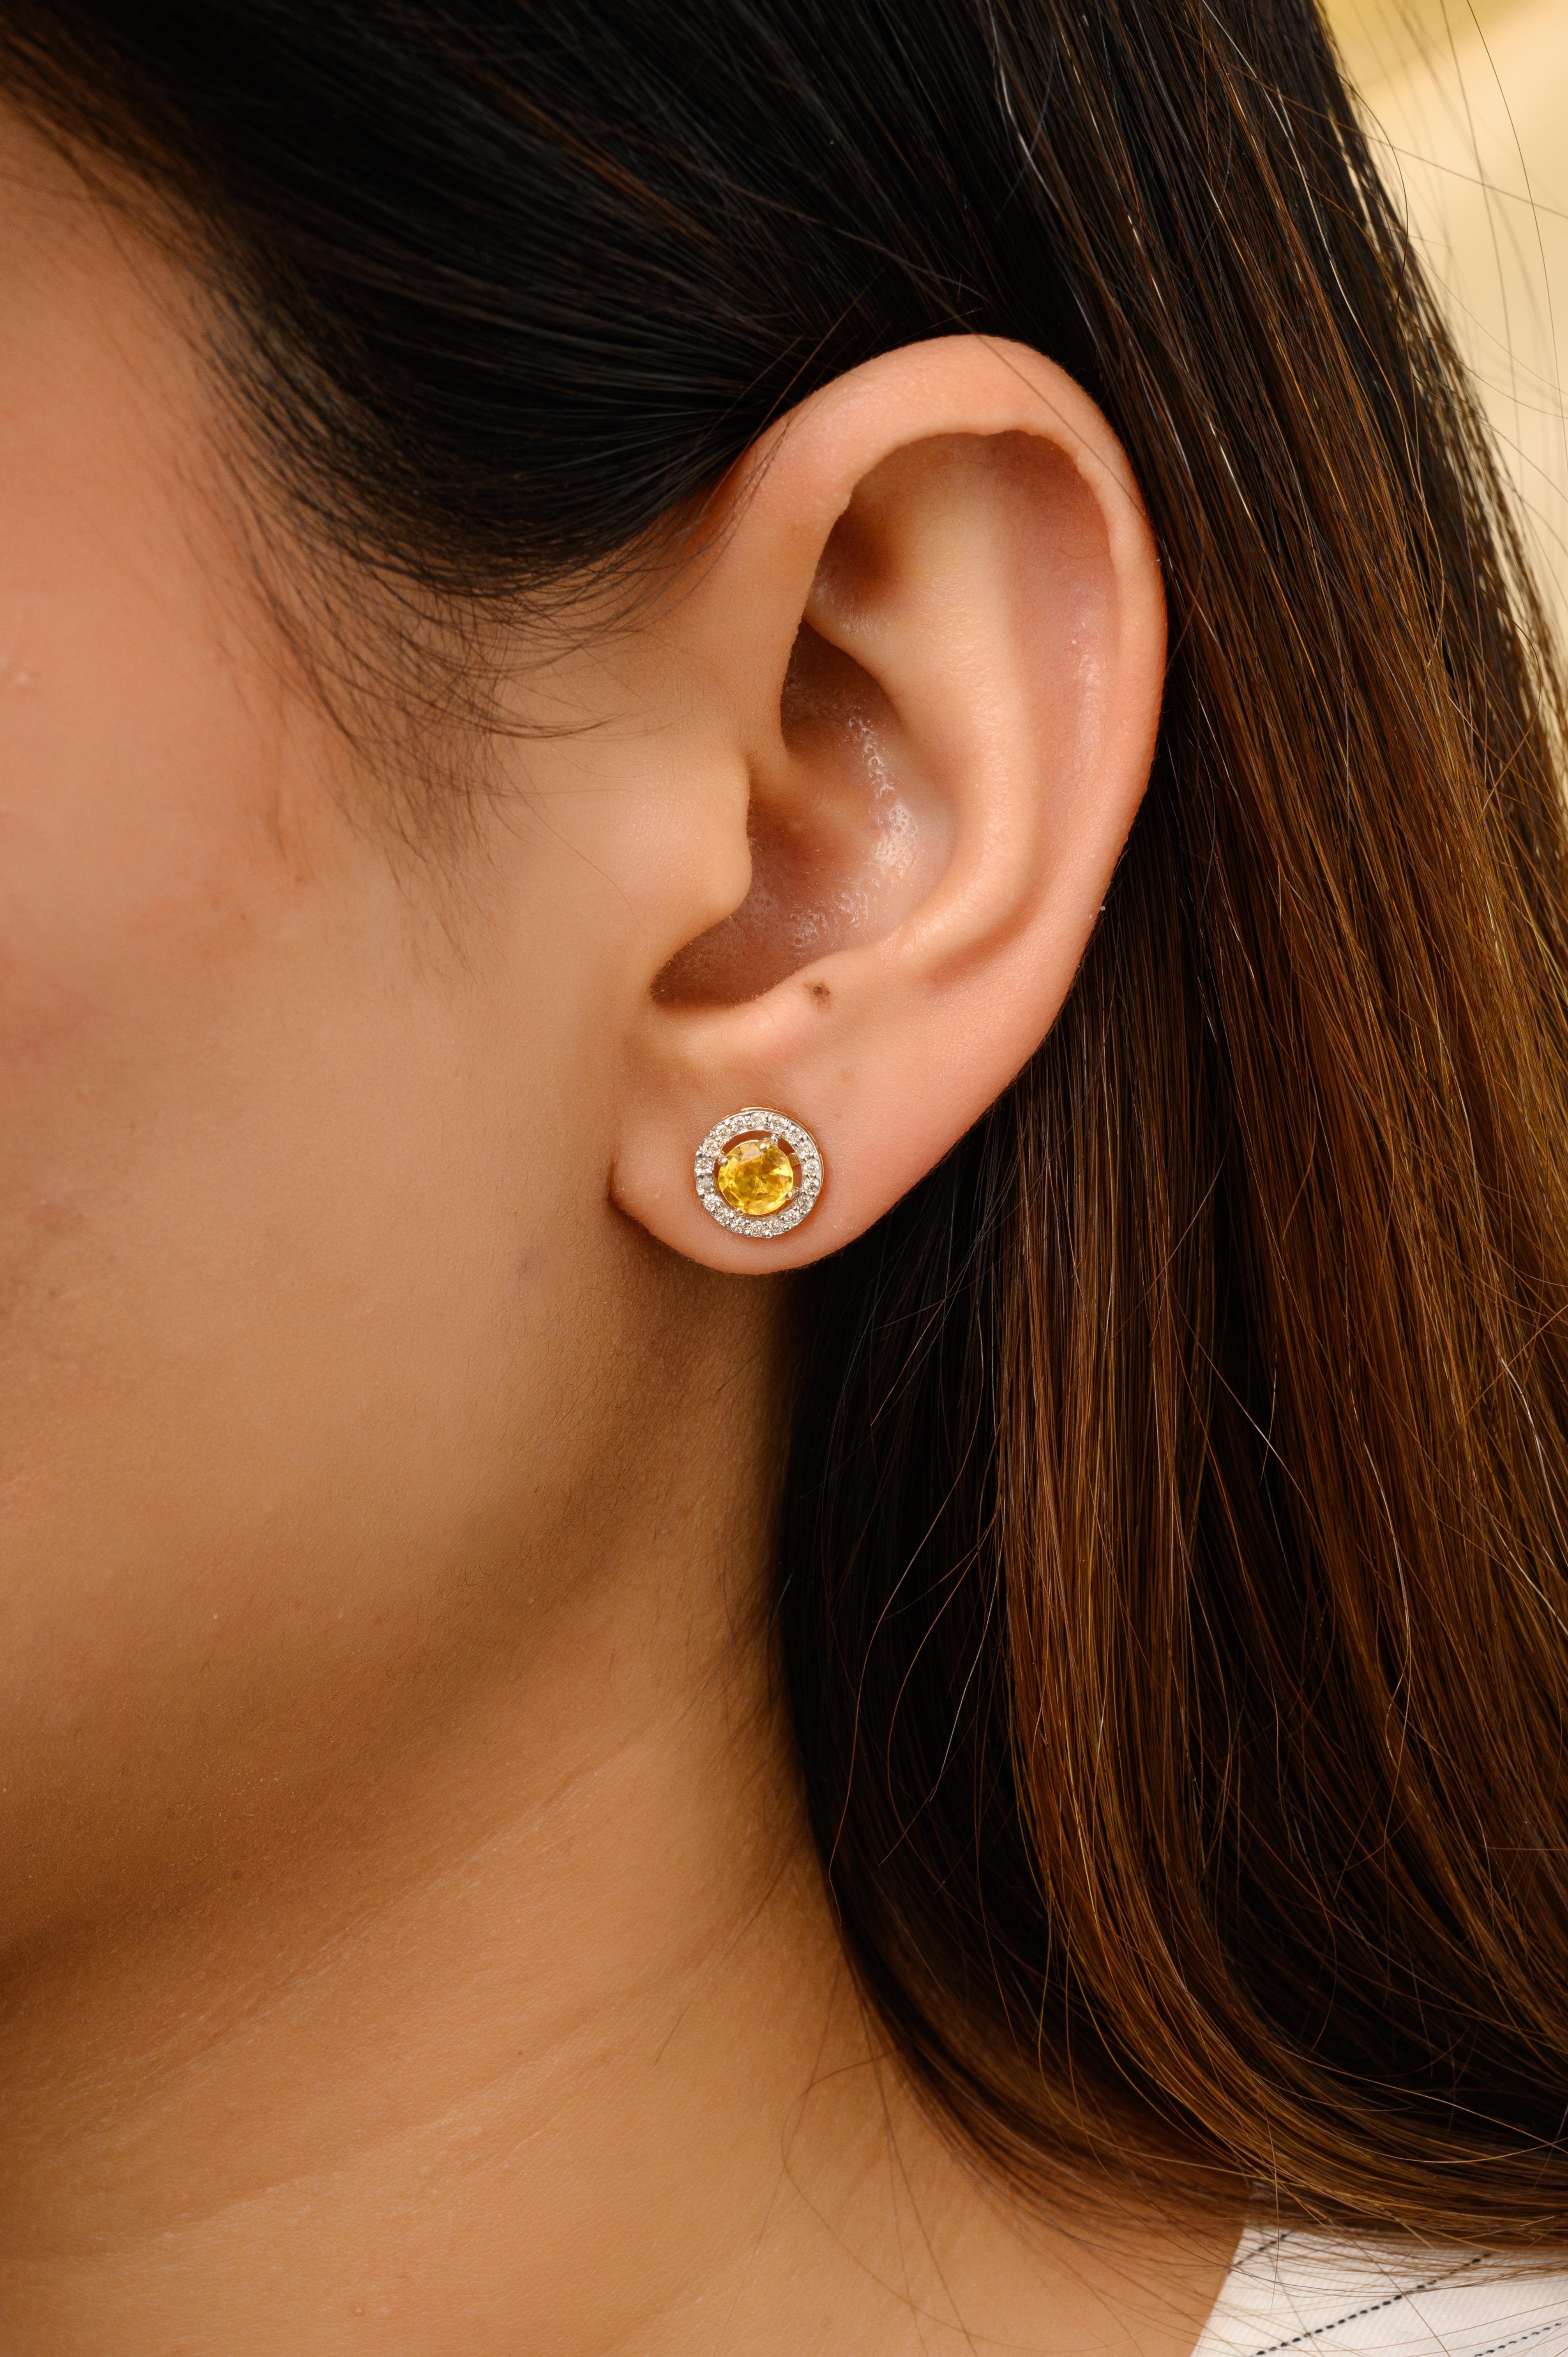 1 Karat runde gelbe Saphir-Diamant-Halo-Ohrstecker aus 14K Gold, um Ihren Look zu unterstreichen. Sie brauchen Ohrstecker, um mit Ihrem Look ein Statement zu setzen. Diese Ohrringe sorgen für einen funkelnden, luxuriösen Look mit einem gelben Saphir